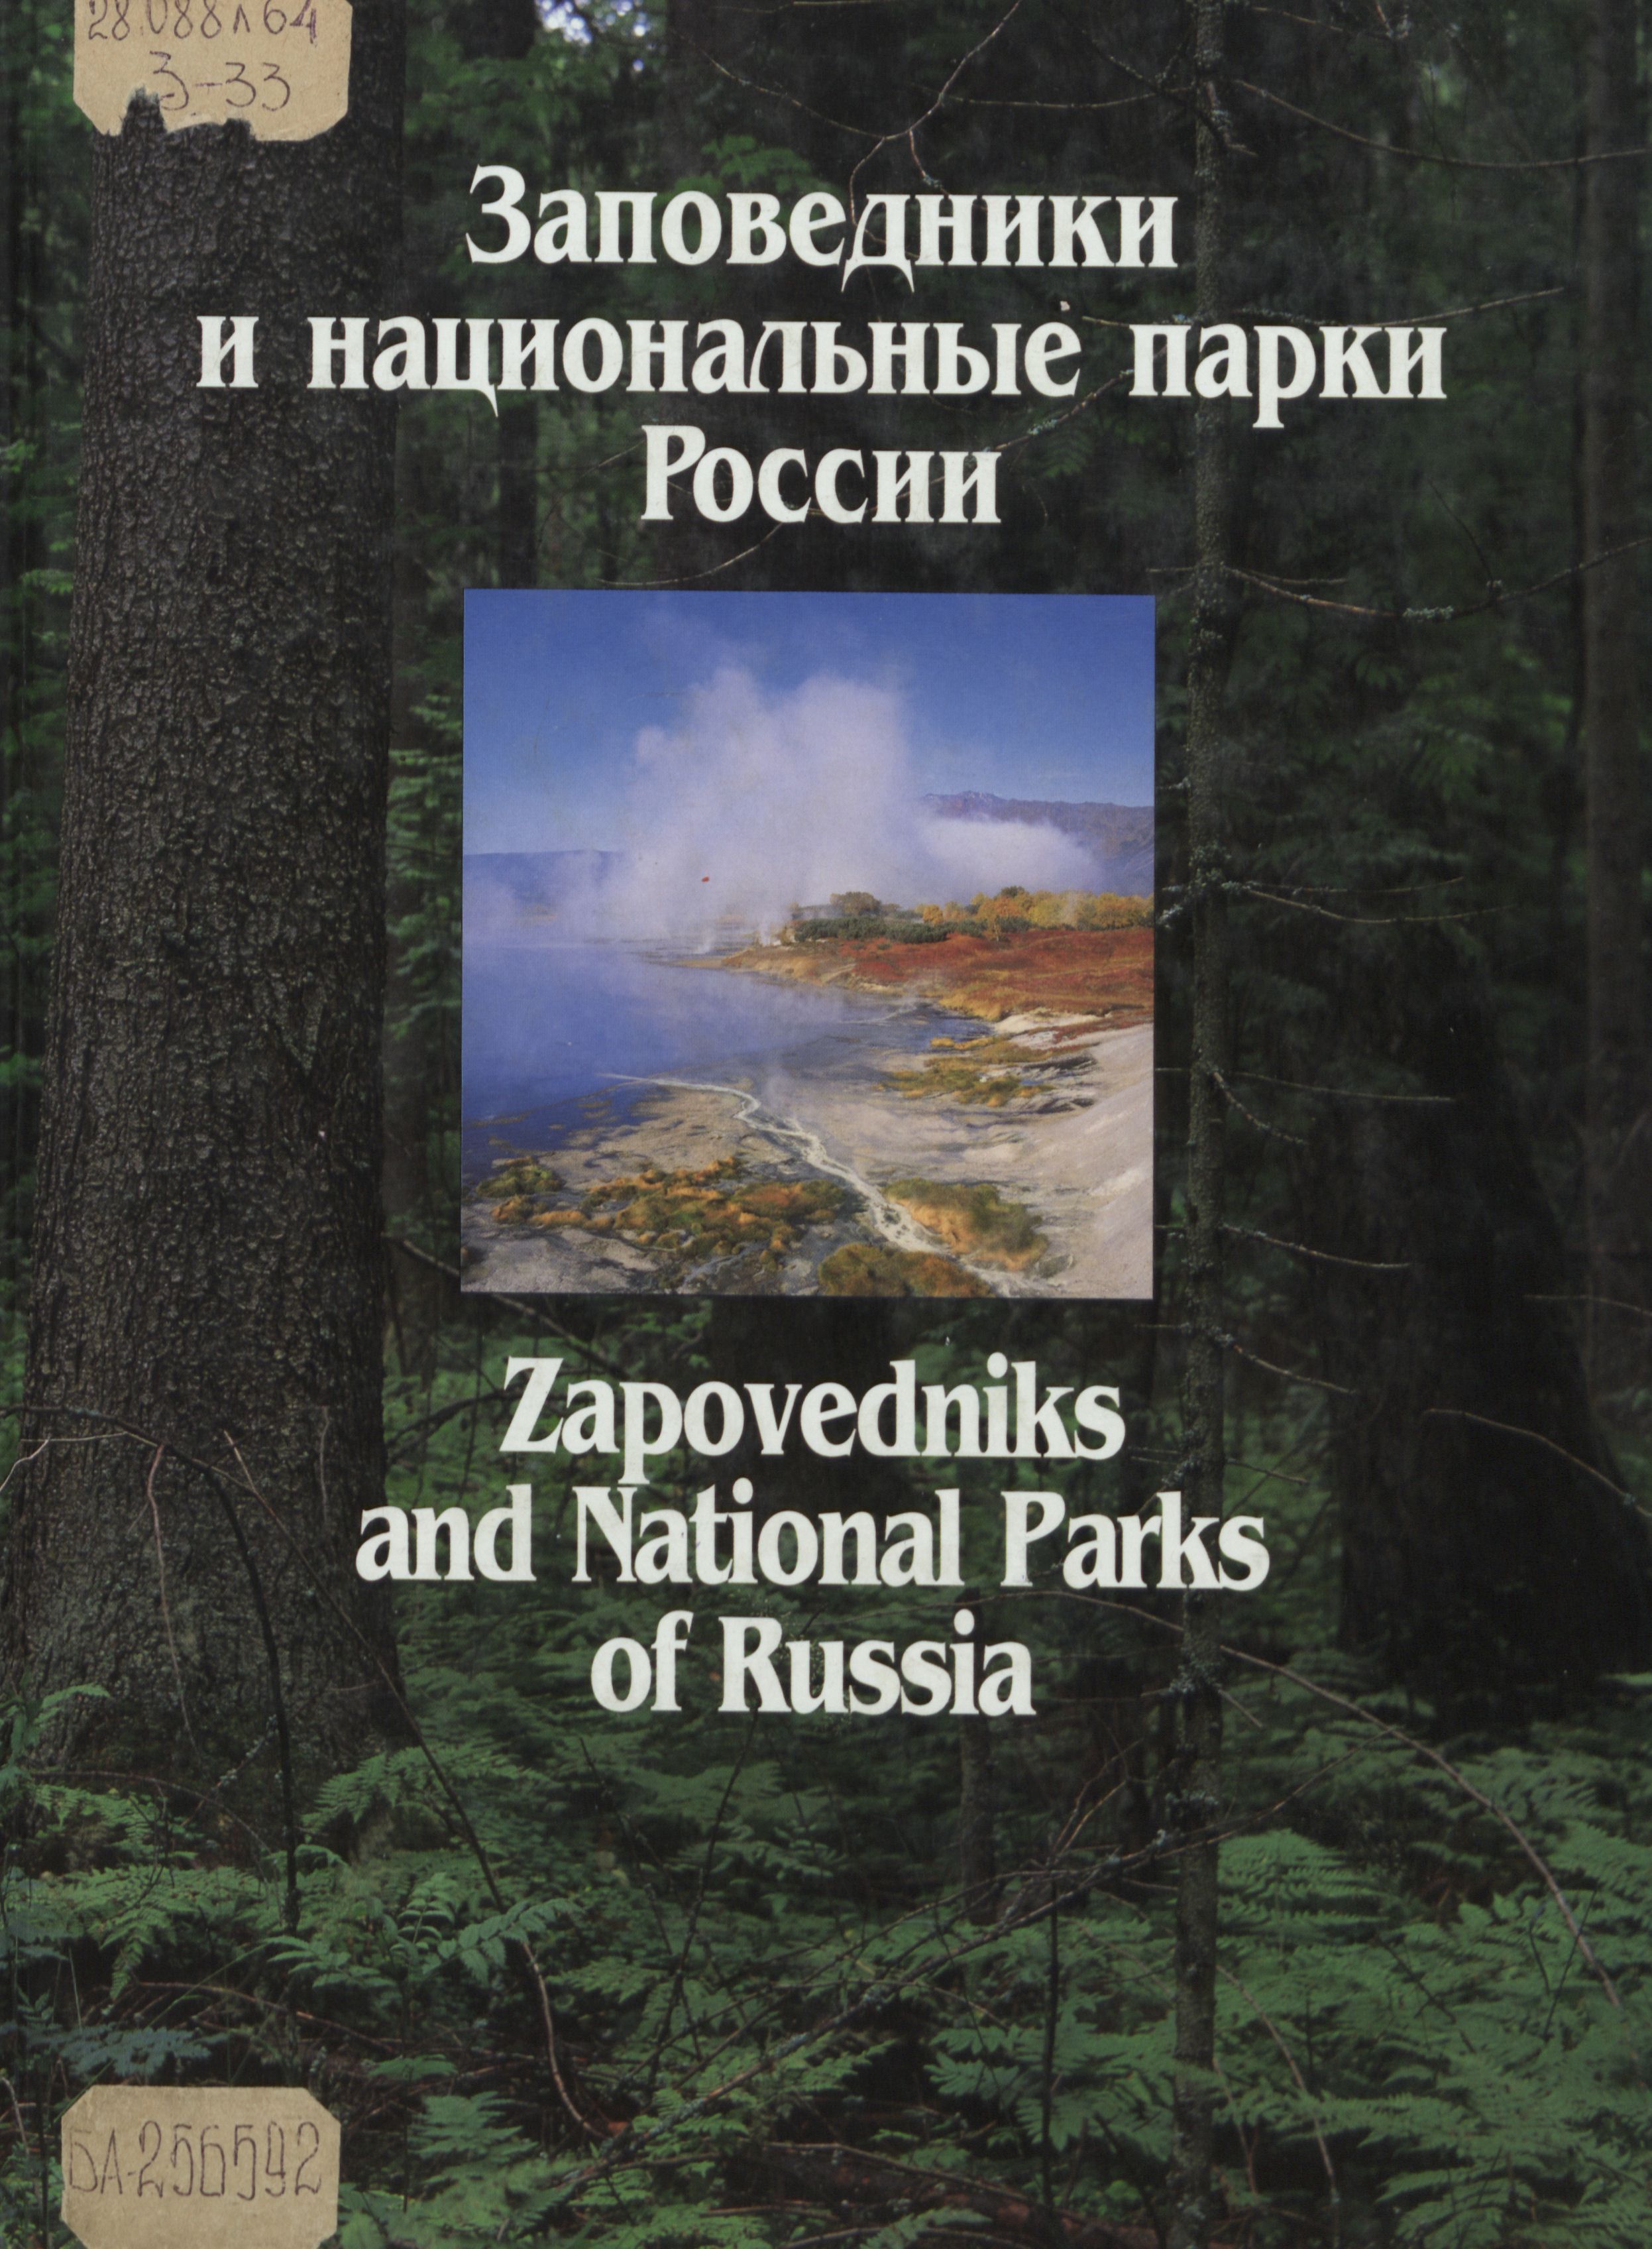 по заповедникам и национальным паркам